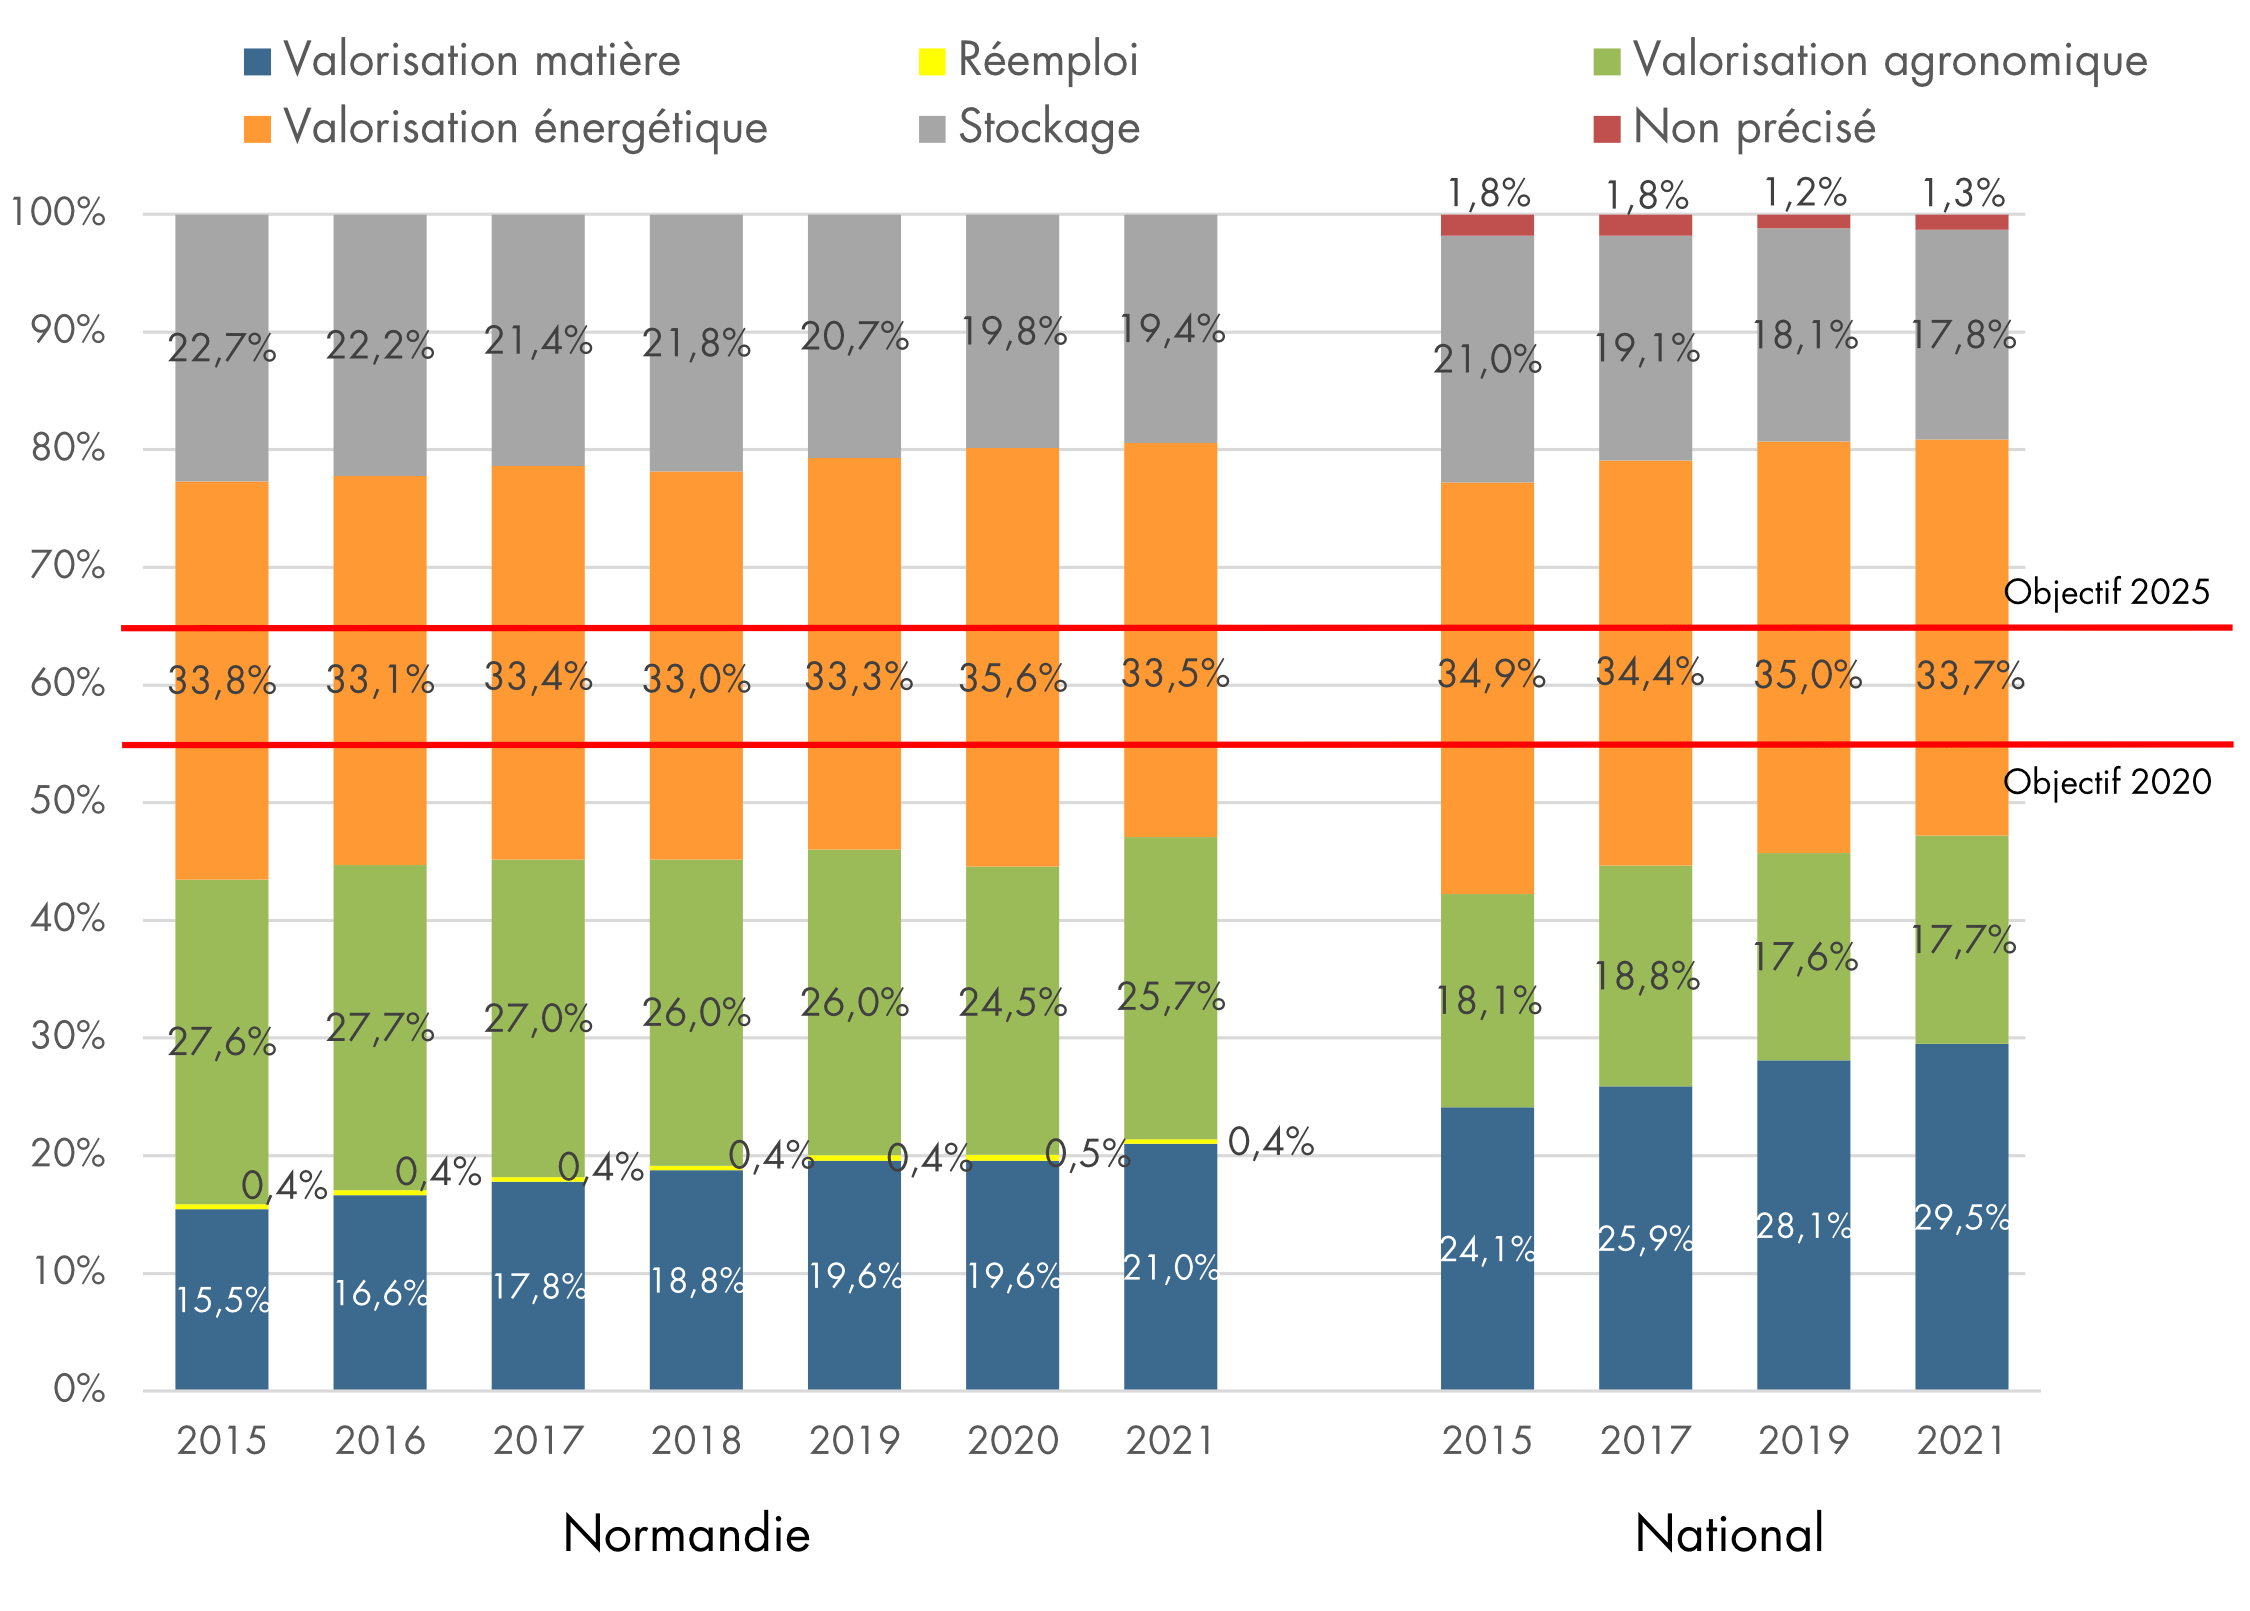 Evolution du taux de valorisation matière entre 2015 et 2021 